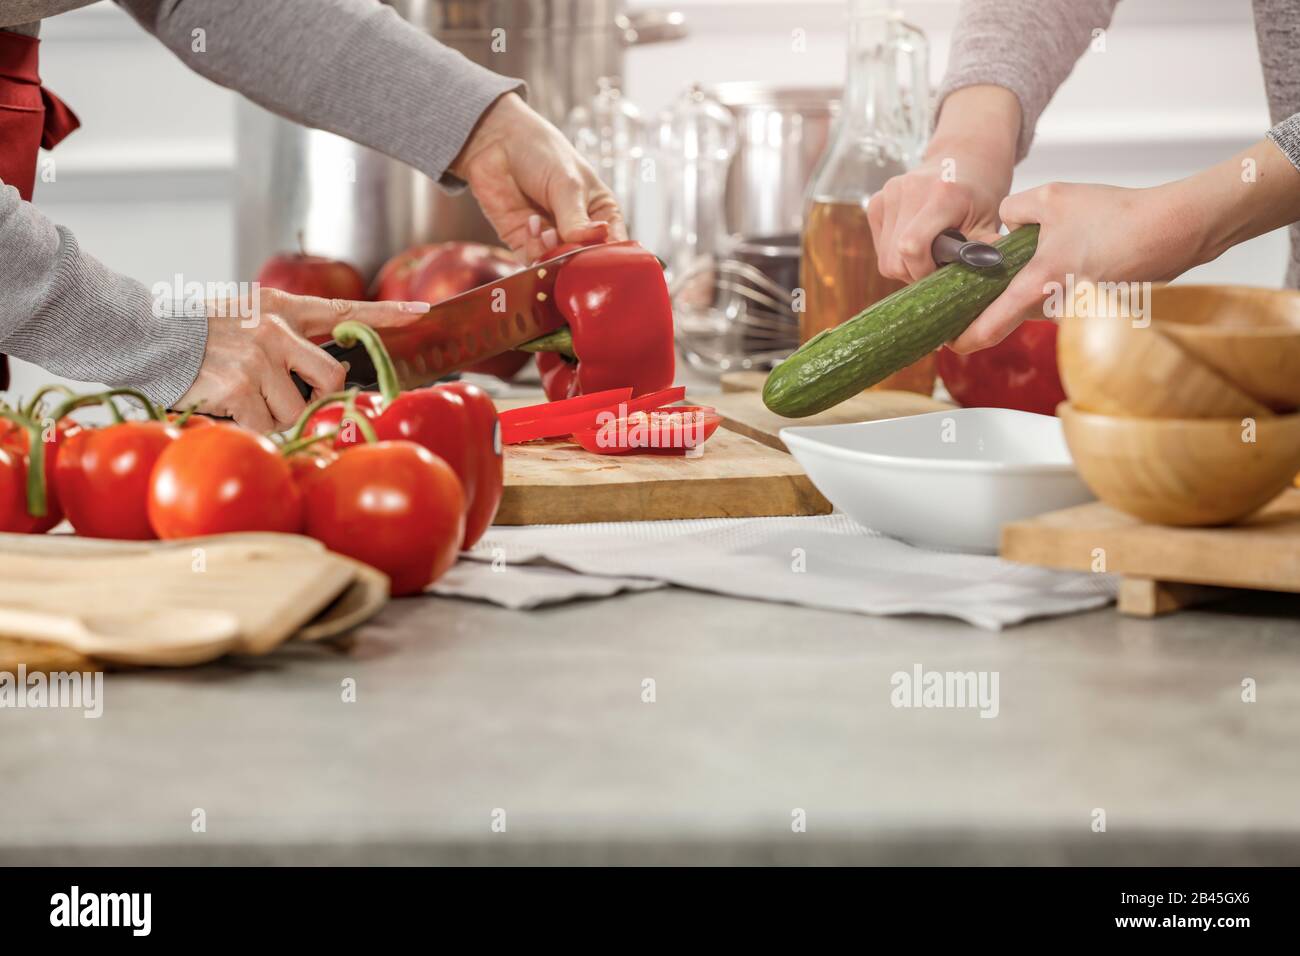 Cucina, cottura e preparazione di pasti e piatti in cucina. Tavolo con utensili da cucina e attrezzature e prodotti alimentari. Foto Stock